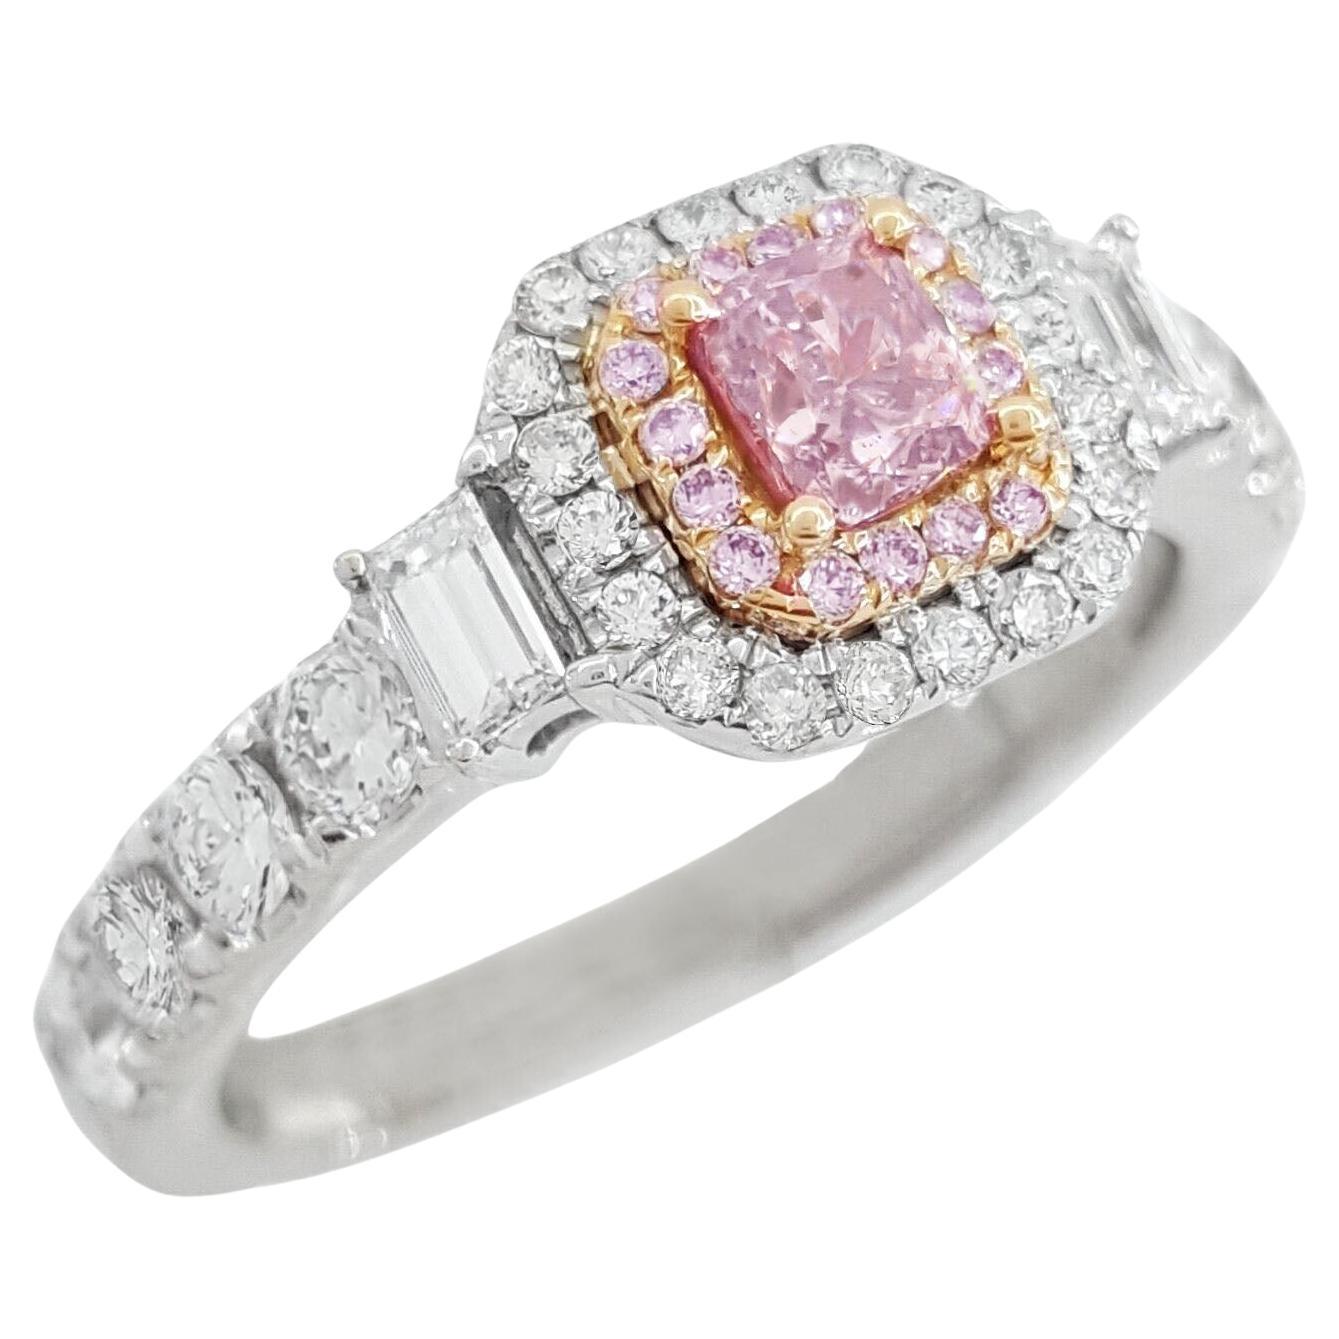 Bague à diamant coussin certifié par la GIA, de couleur rose-brun fantaisie